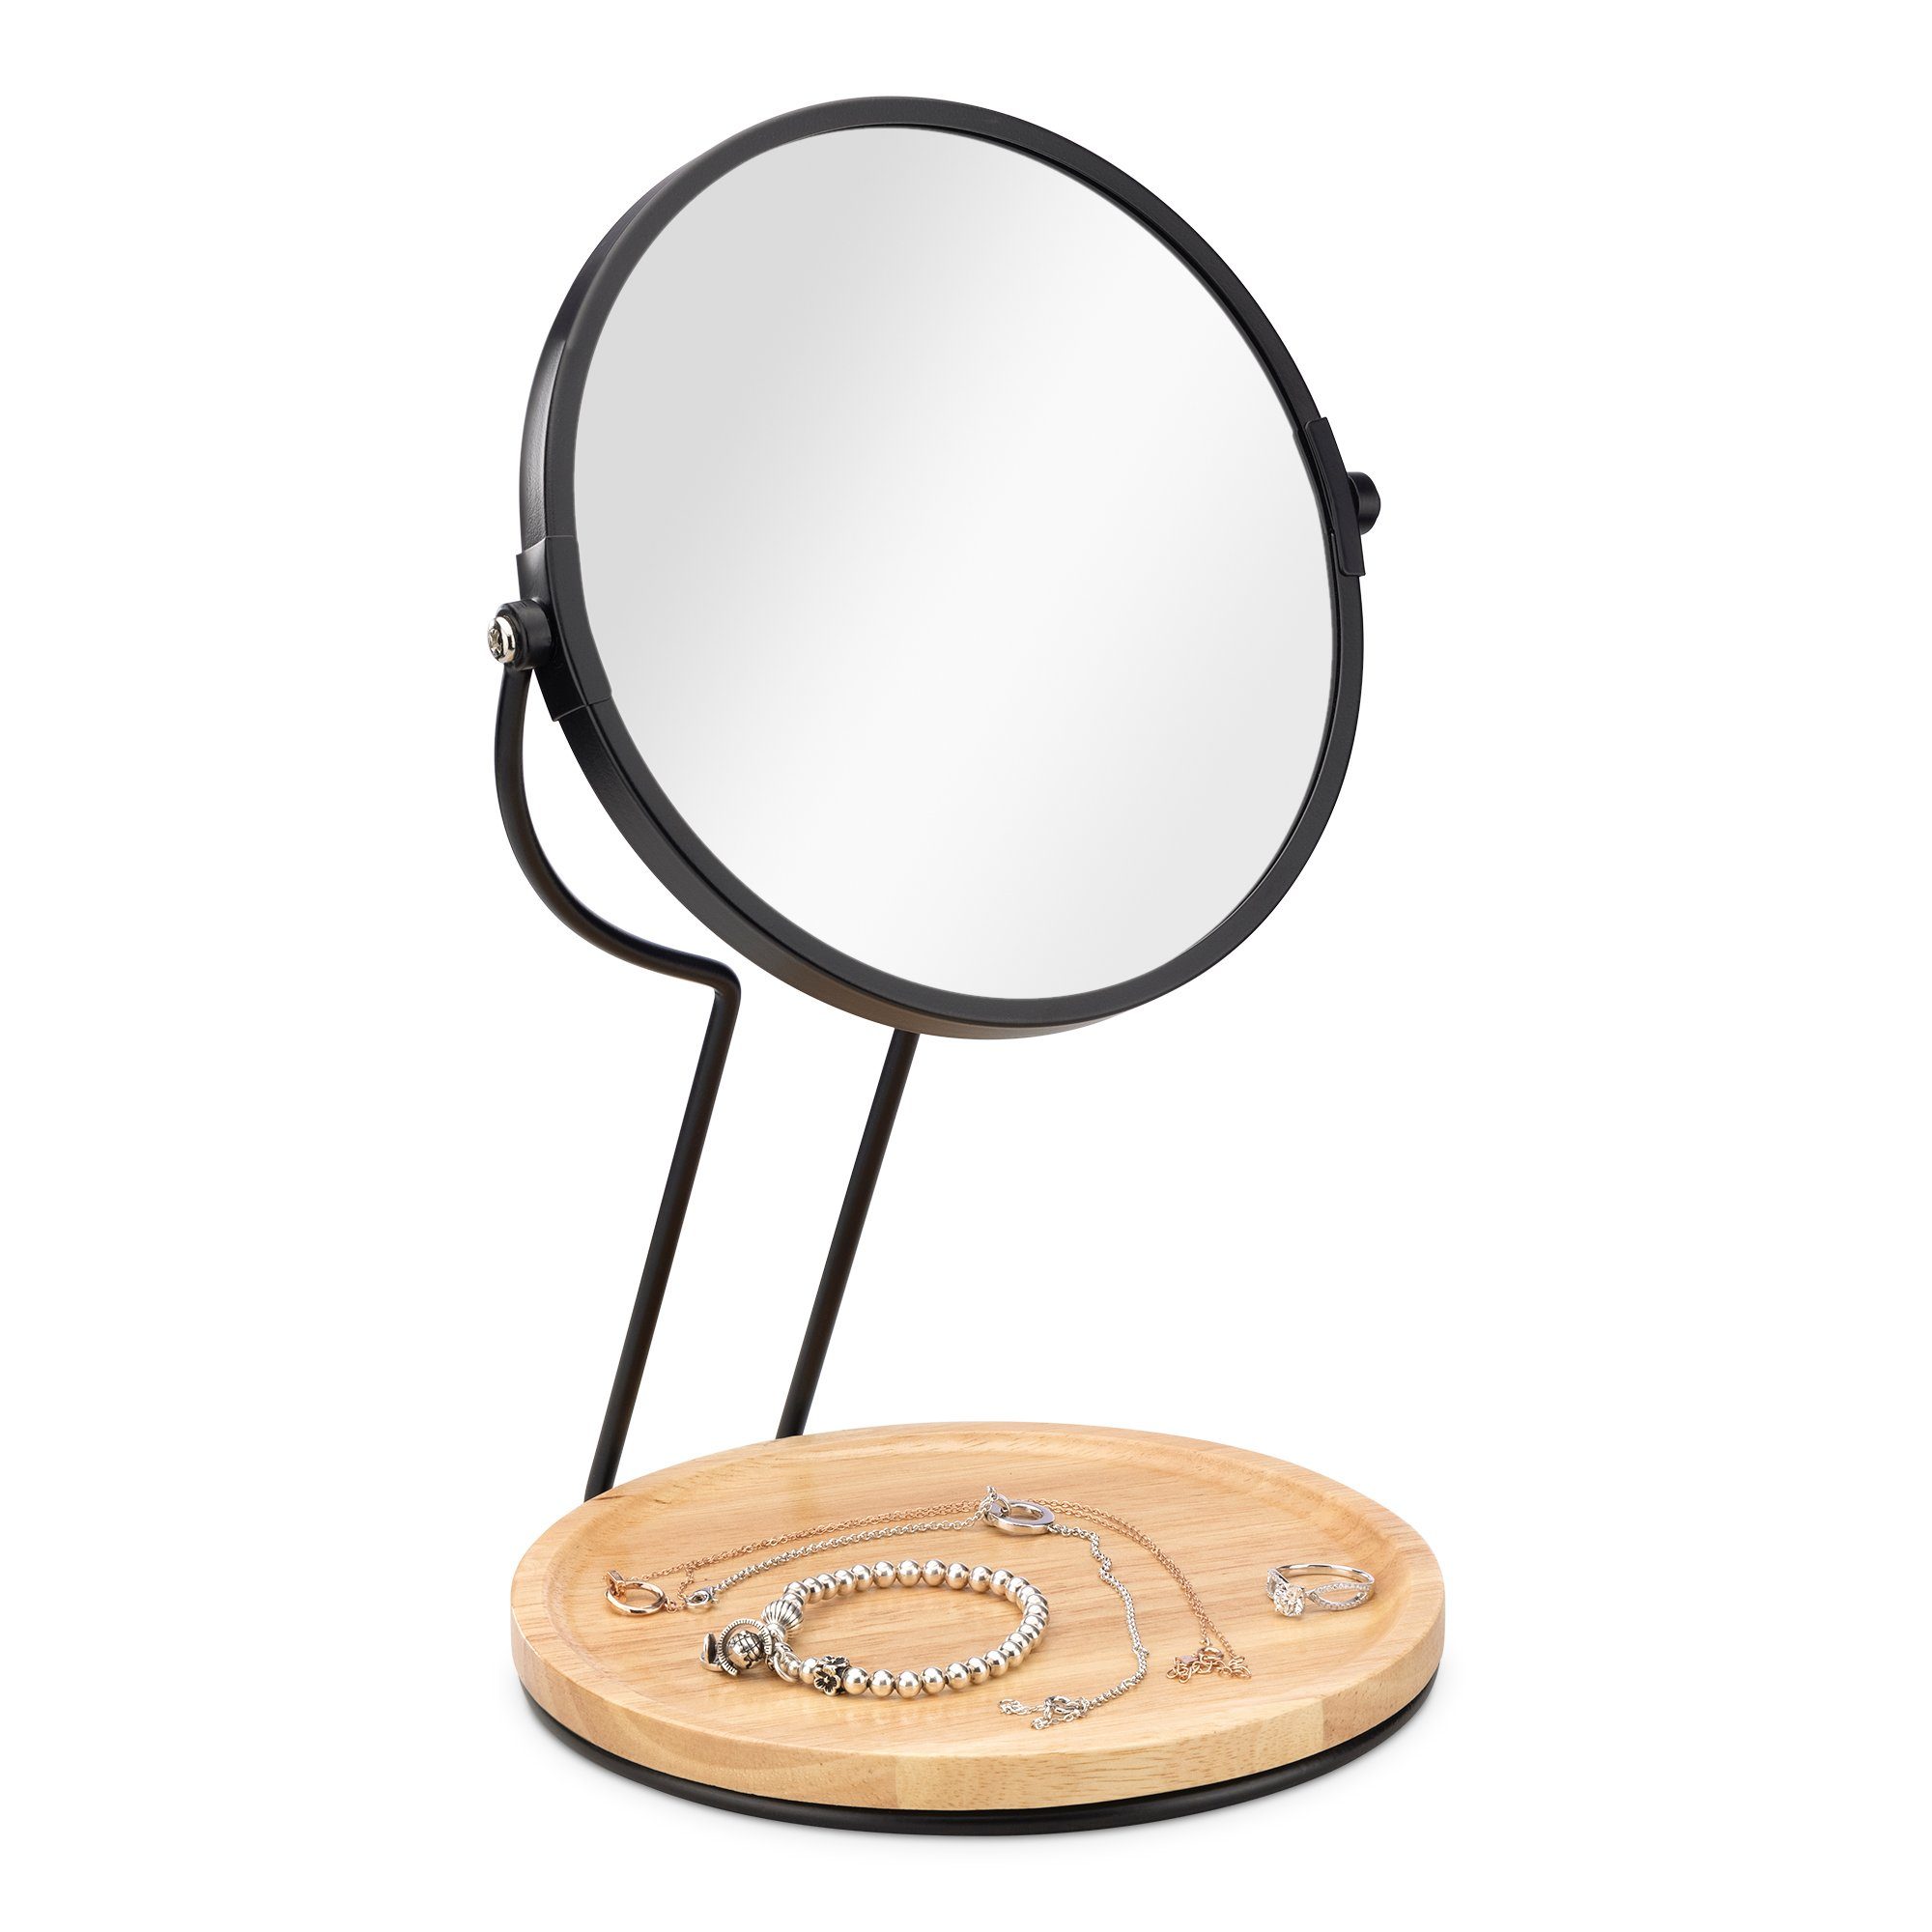 Navaris Kosmetikspiegel Kosmetikspiegel Schminkspiegel - doppelseitiger 360° Spiegel